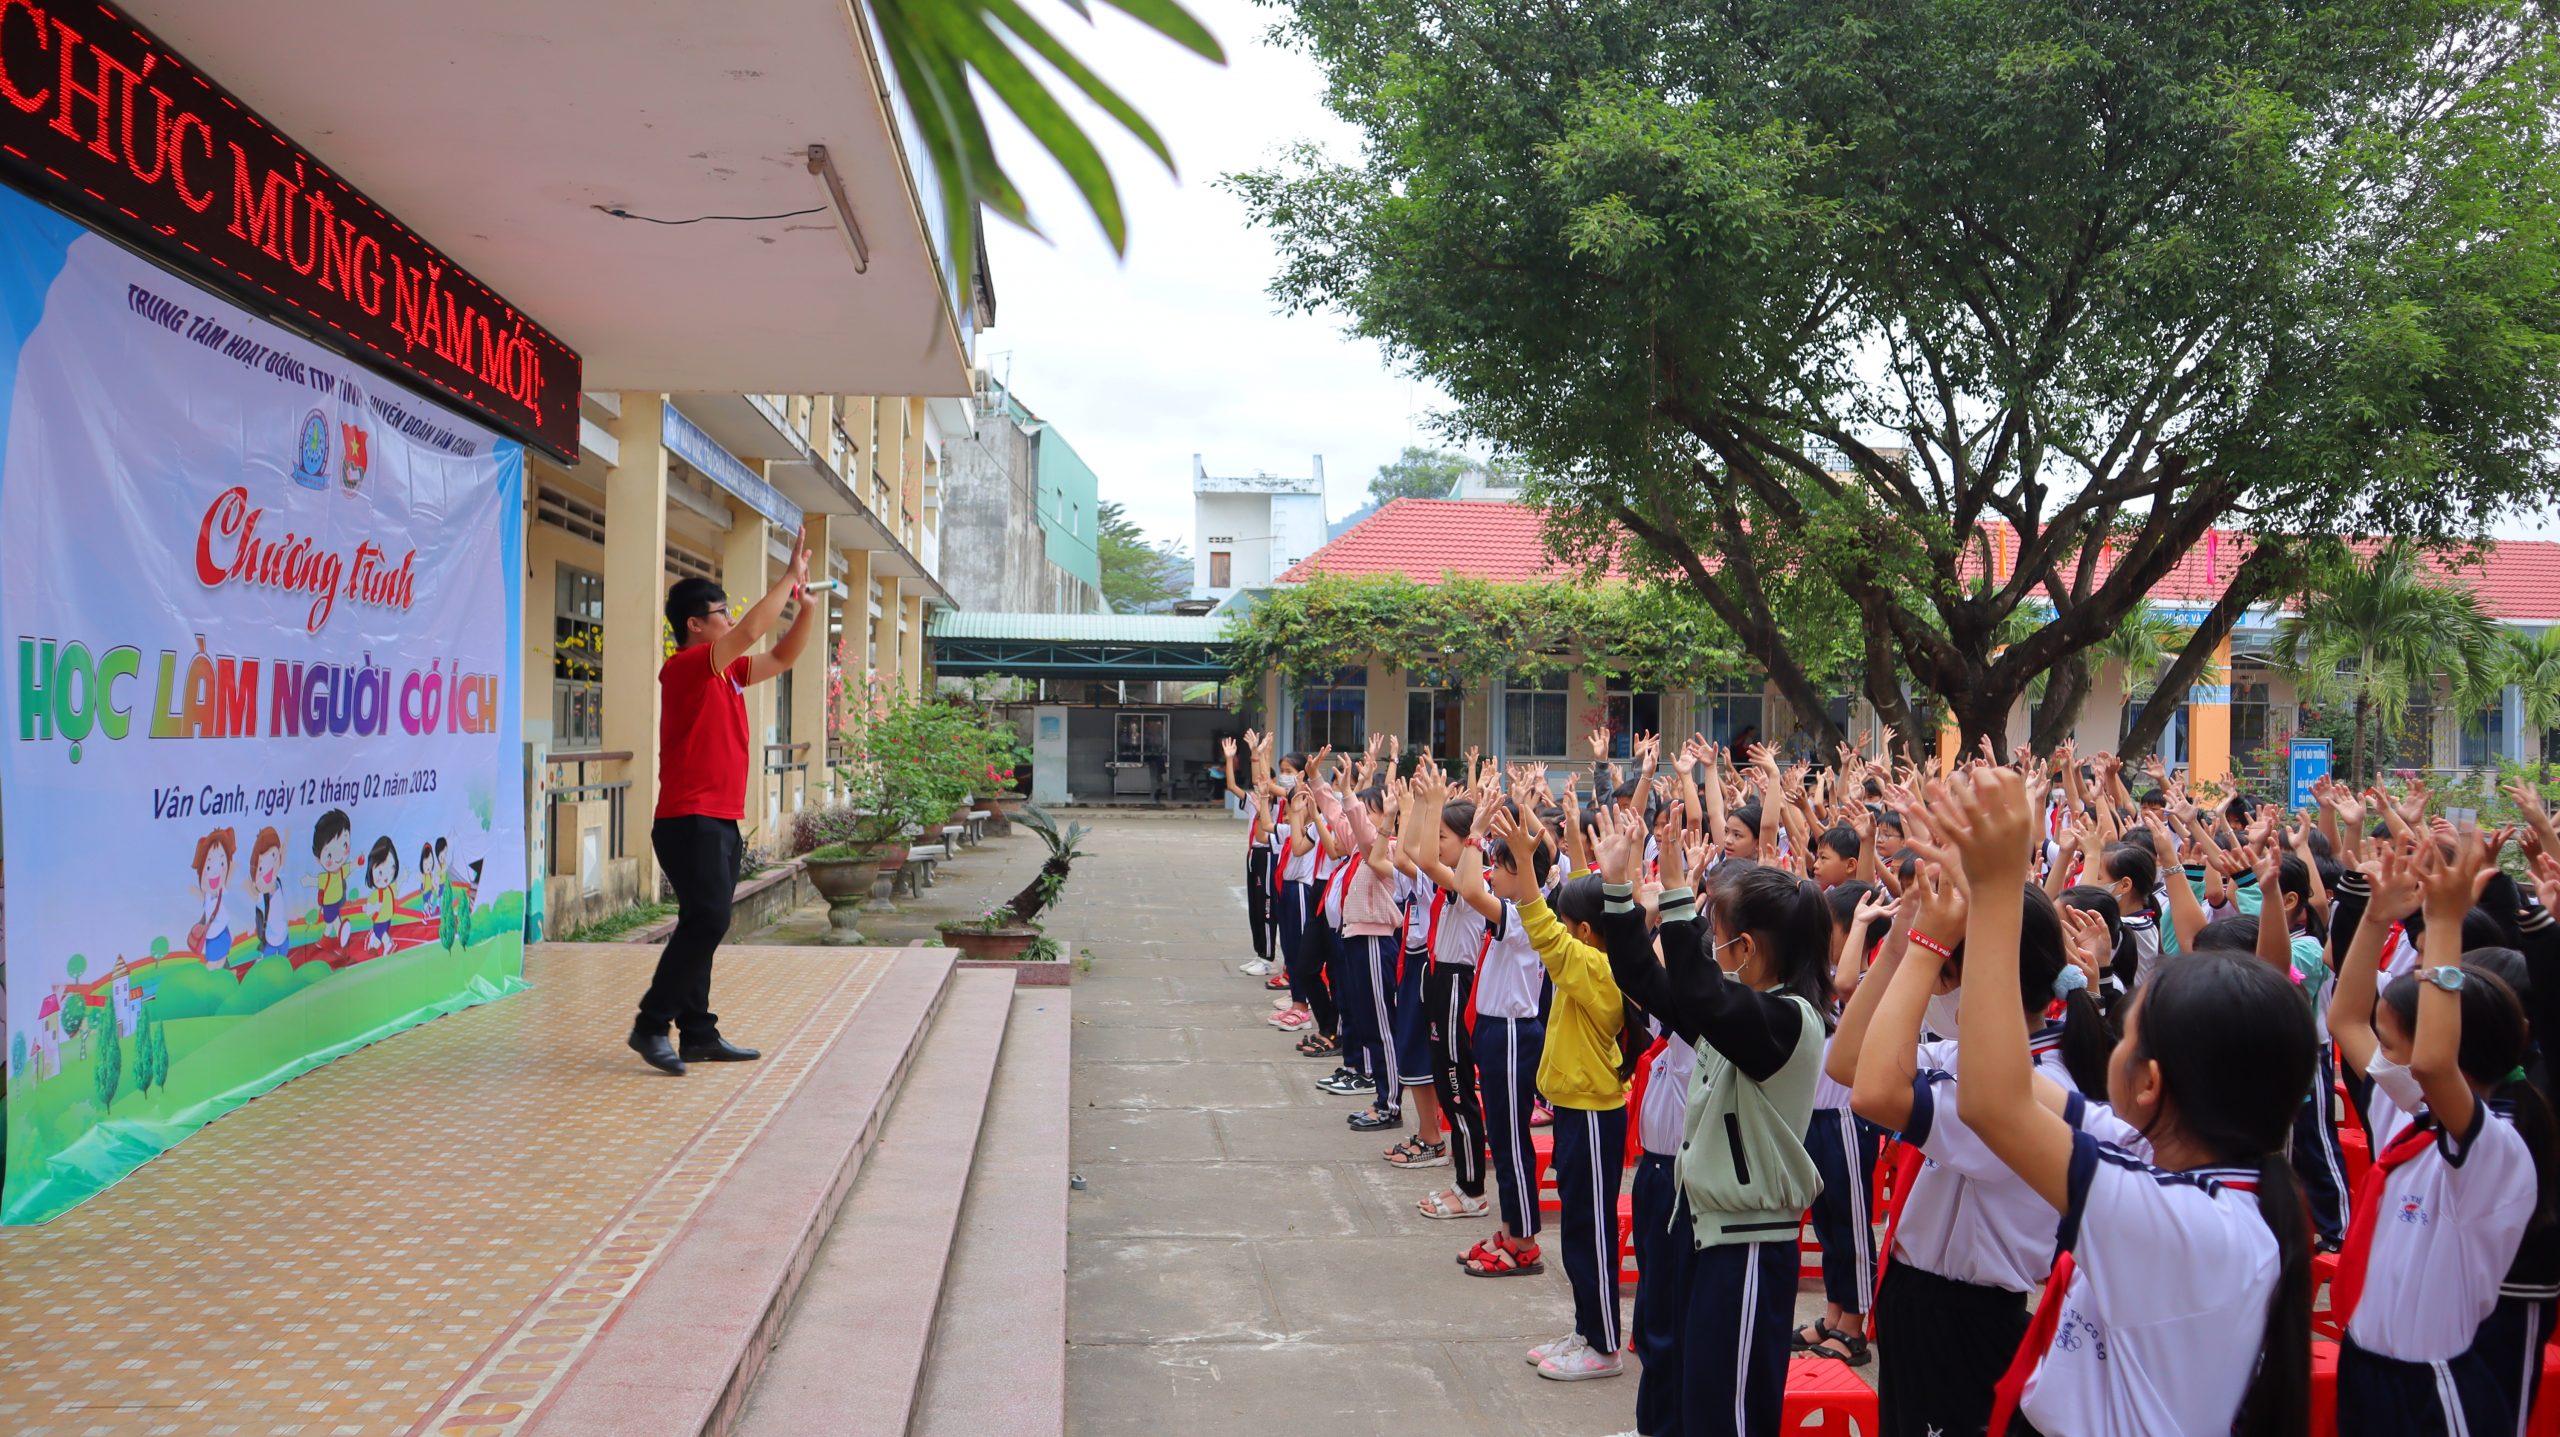 Tổ chức chương trình “Học làm người có ích” năm 2023 tại trường Tiểu học số 1 Canh Vinh và Tiểu học Thị trấn Vân Canh, huyện Vân Canh.